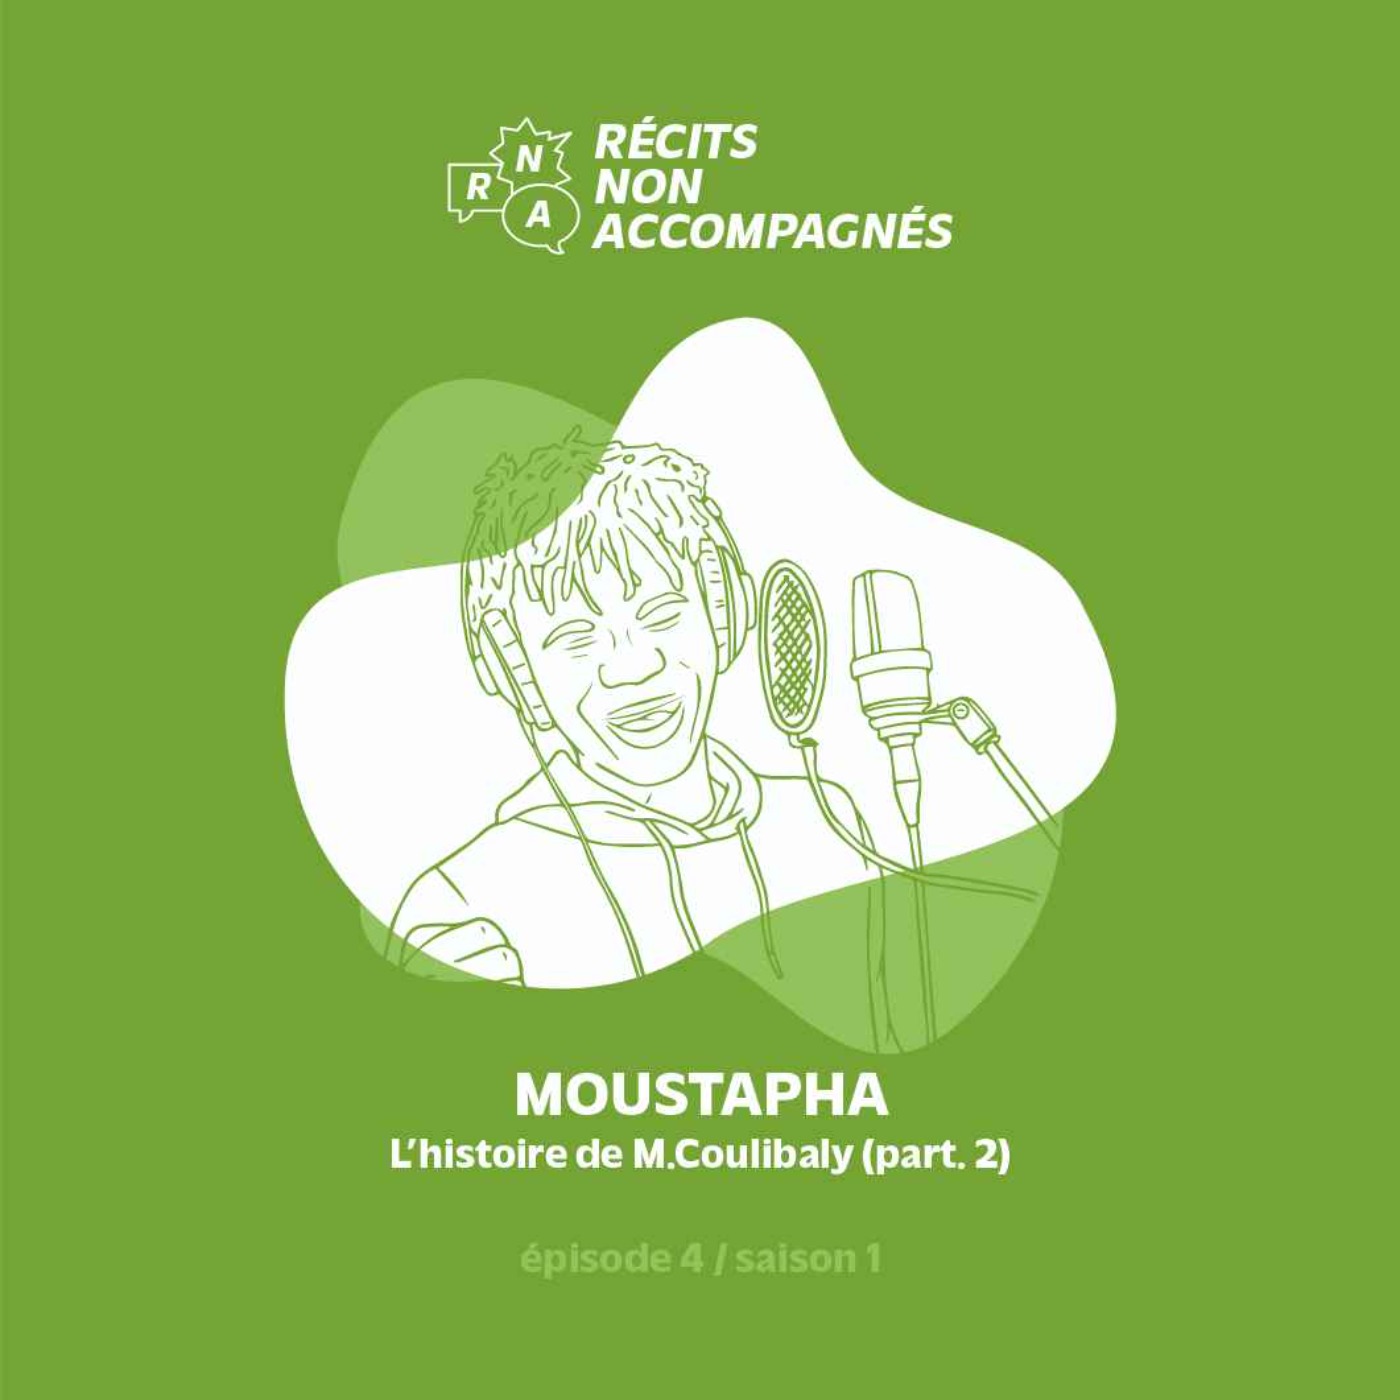 Ep.4 / Moustapha - "L'histoire de M. Coulibaly" (part. 2)